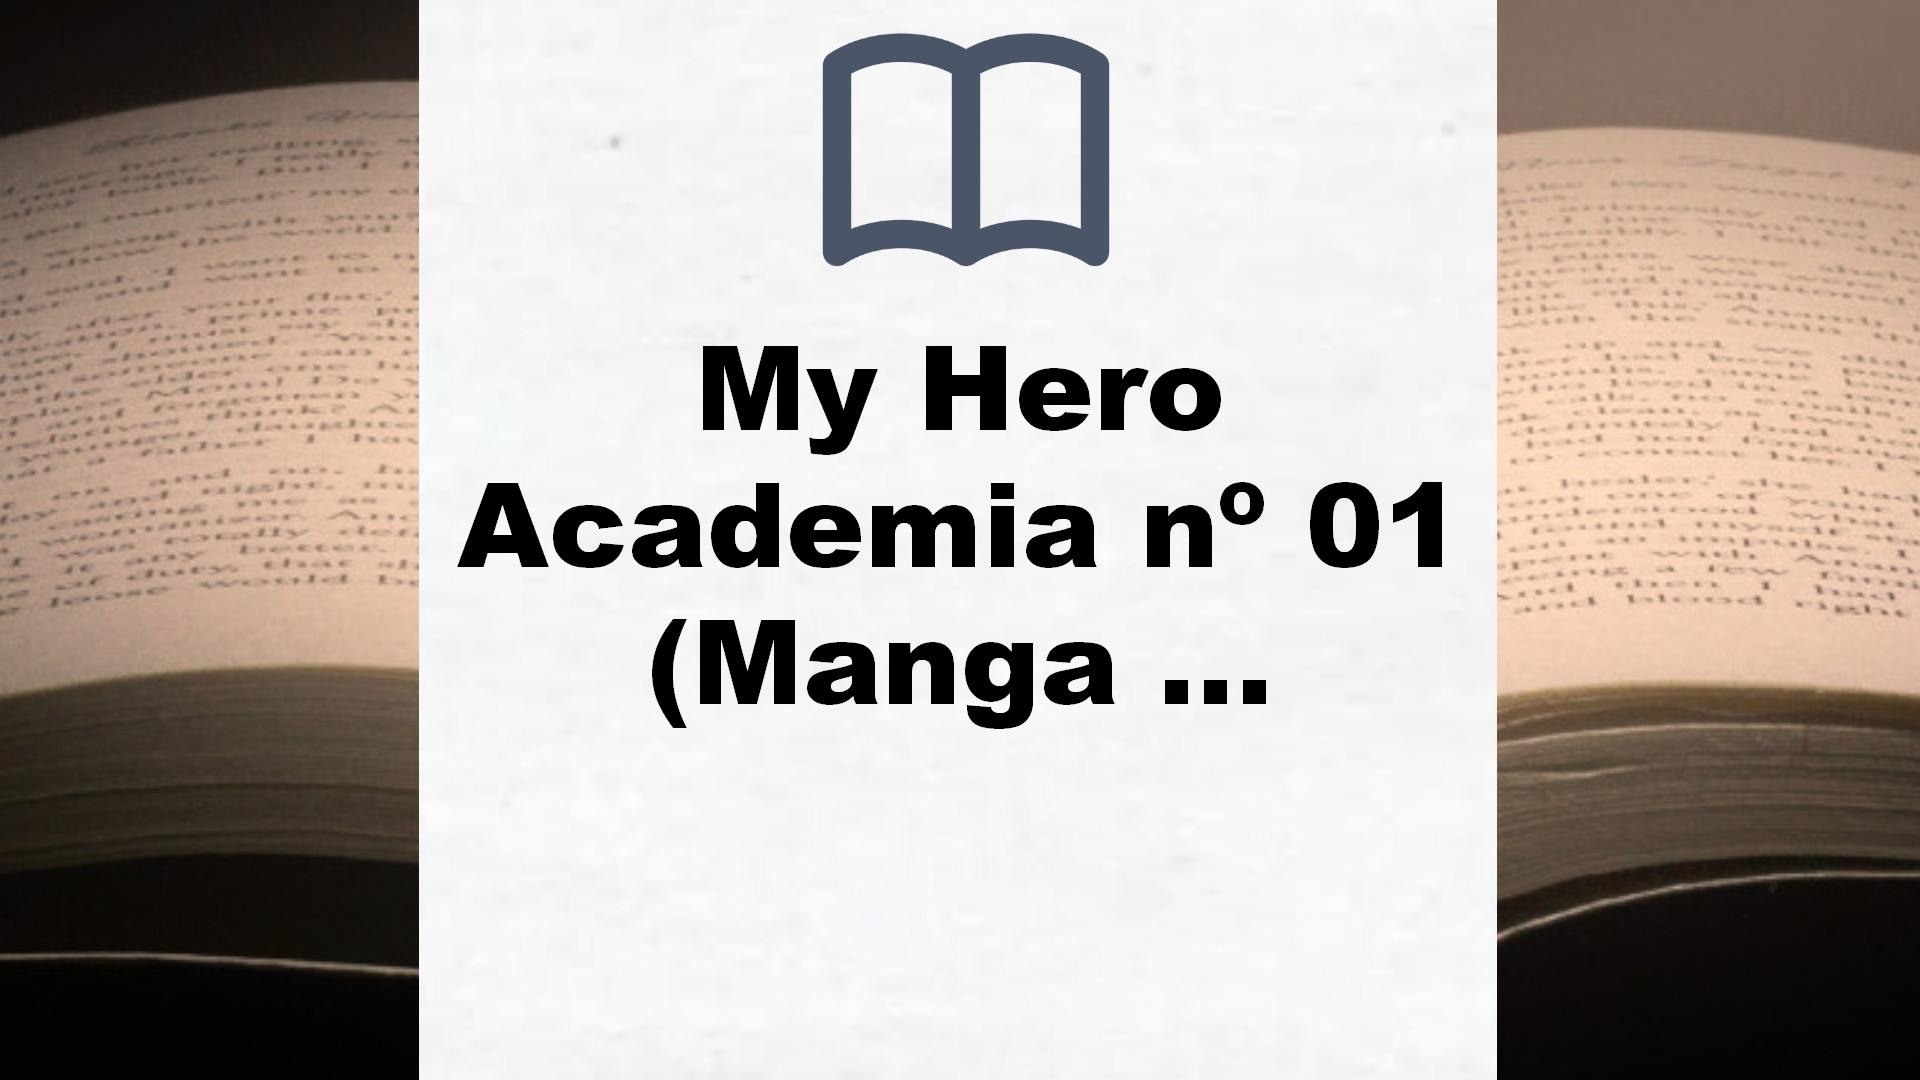 My Hero Academia nº 01 (Manga Shonen) – Reseña del libro